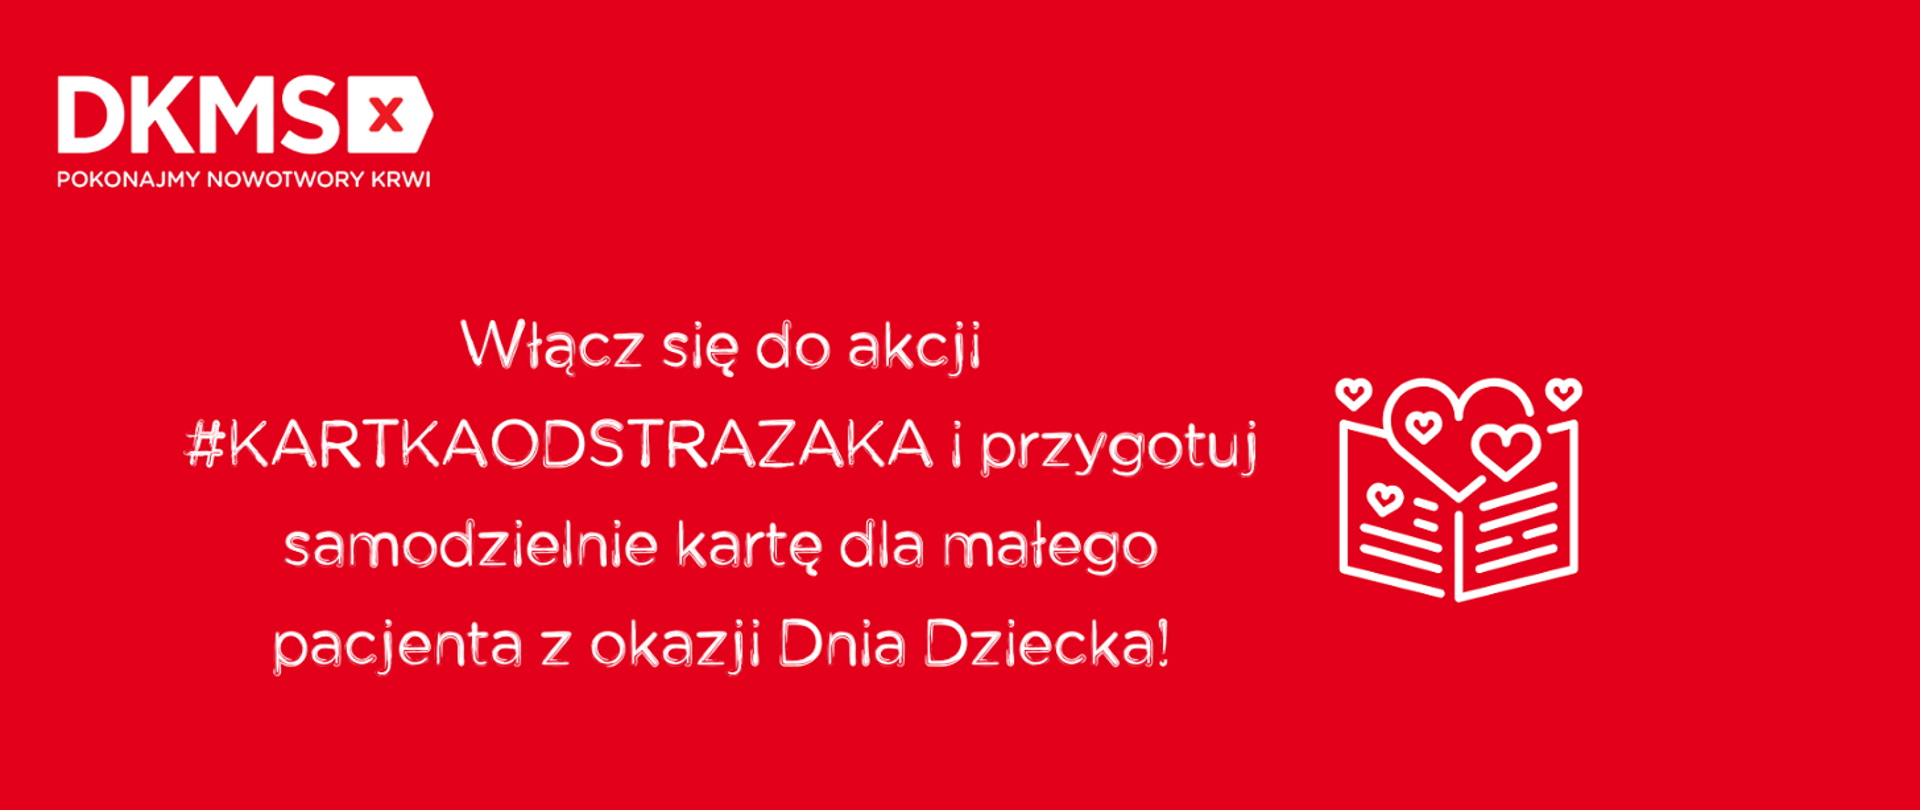 Zdjęcie przedstawia plakat #kartkaodstrazaka – akcji dla małych pacjentów